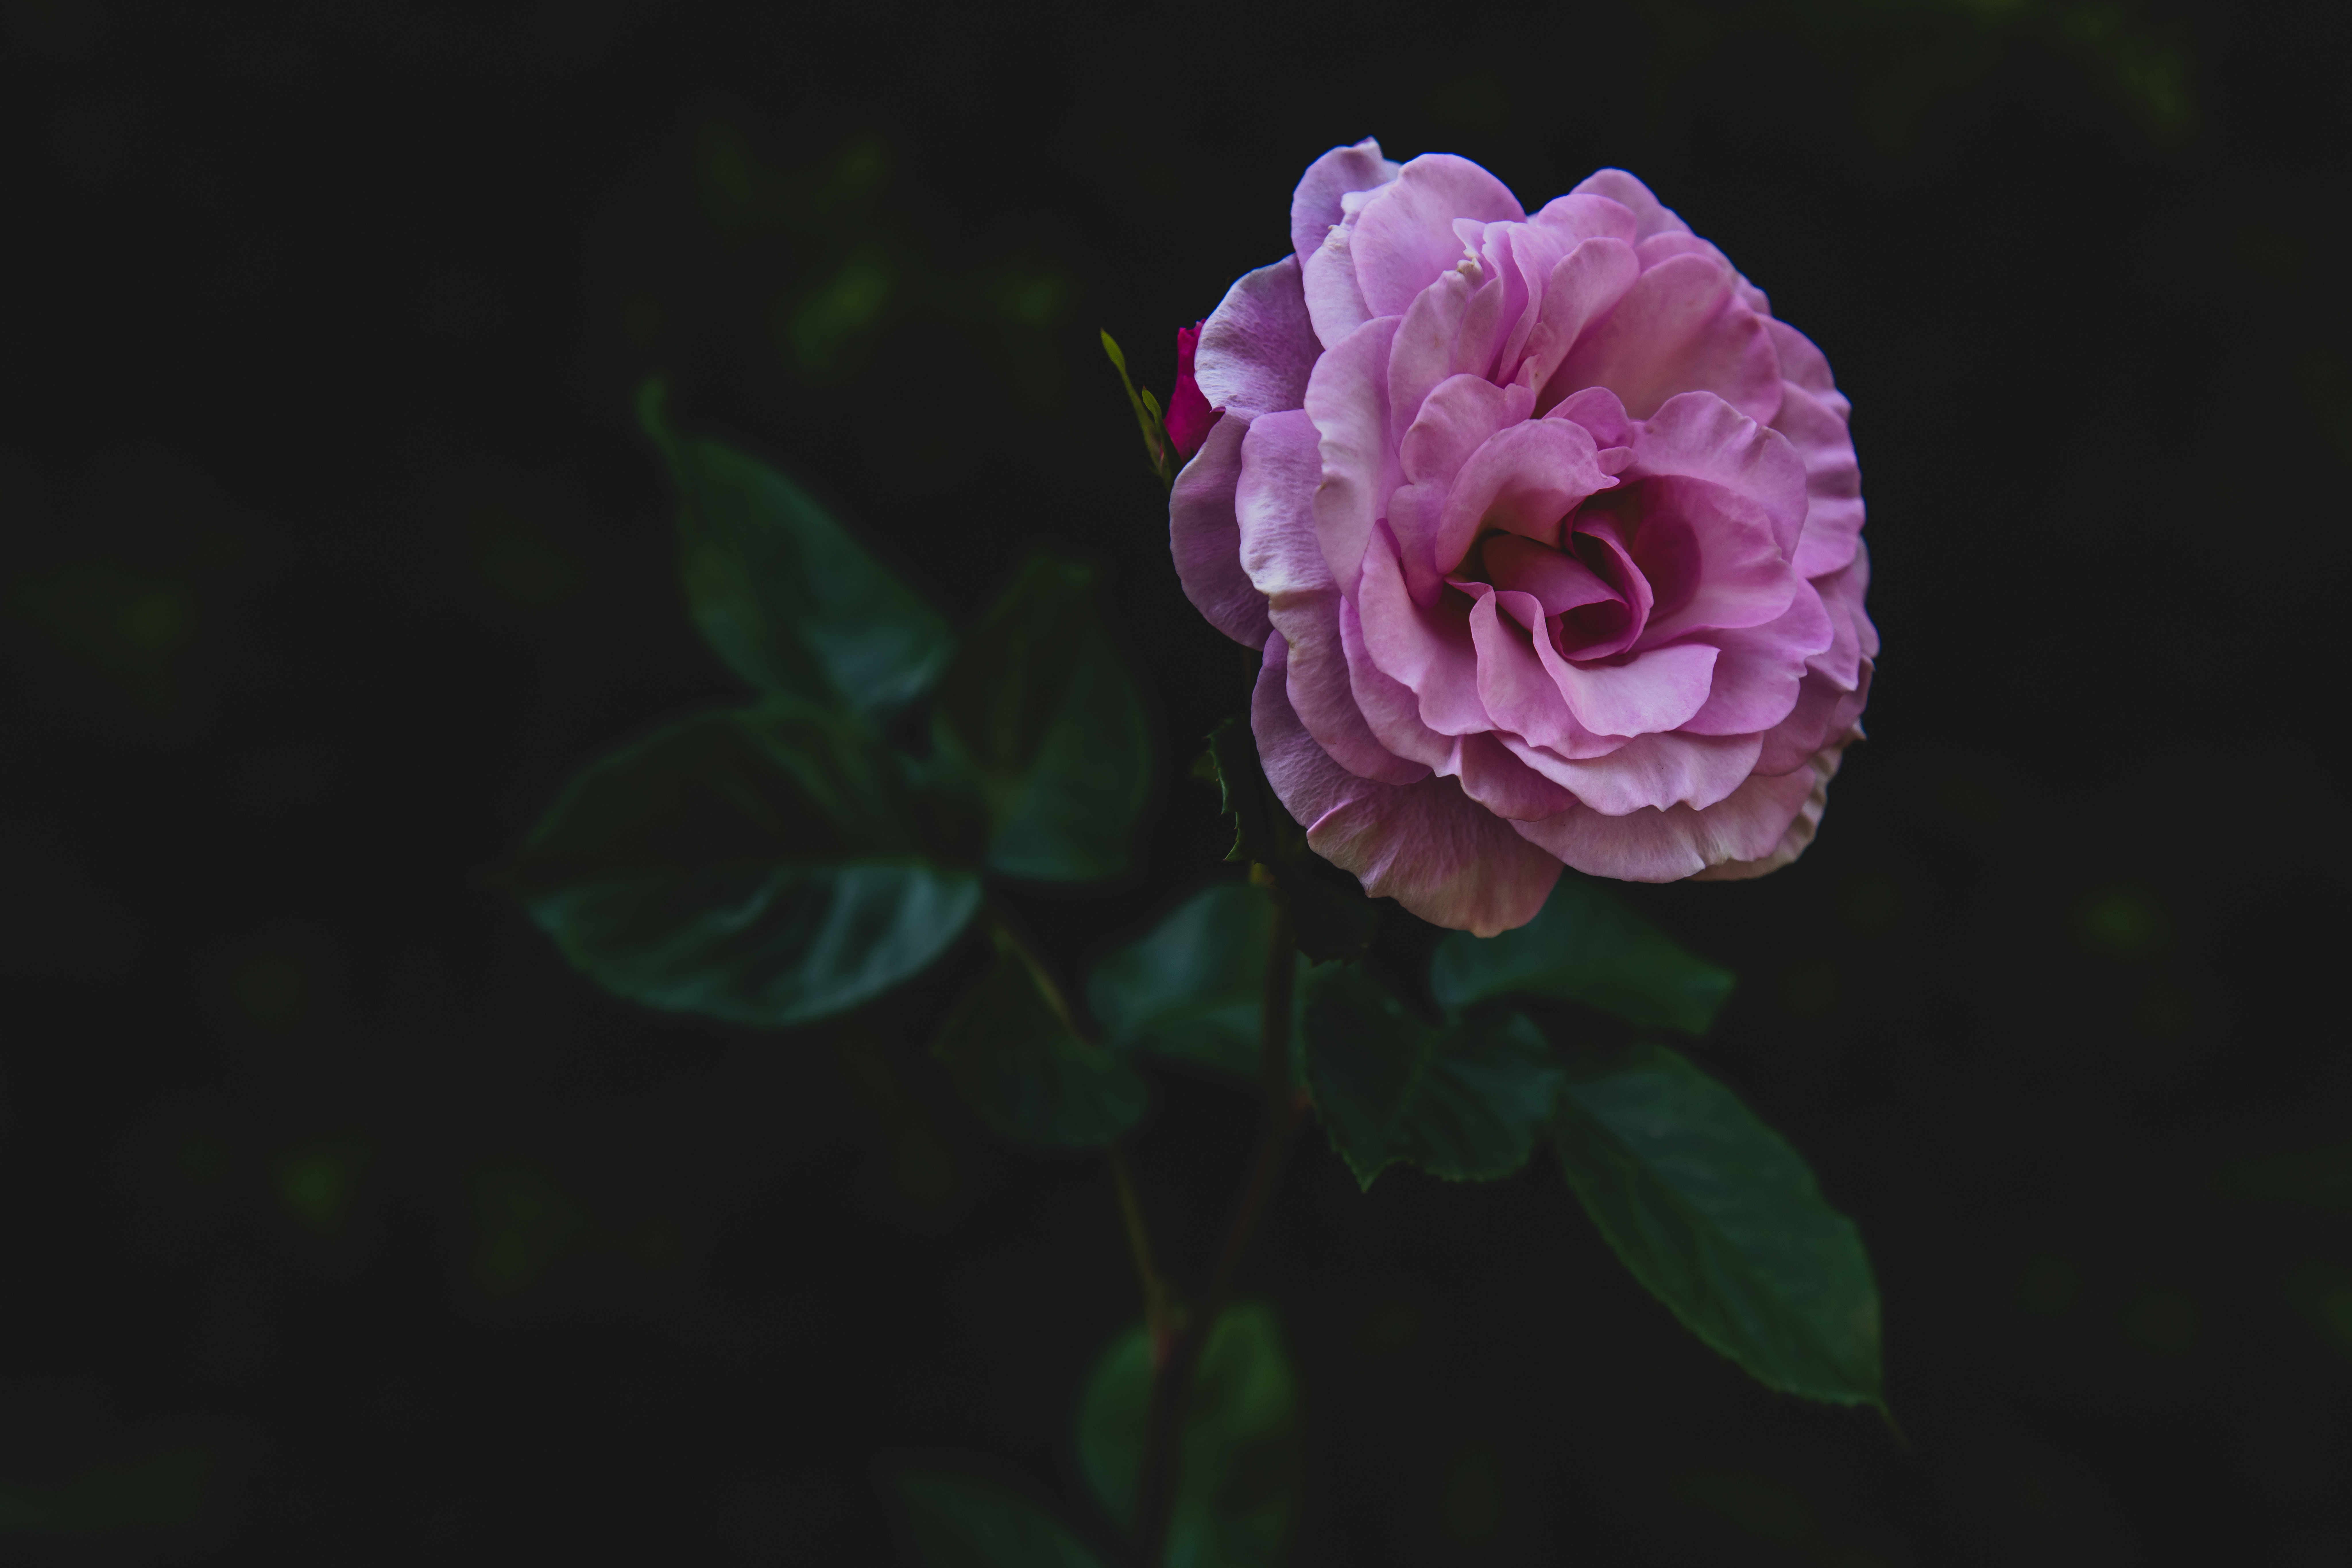 bud, flowers, pink, rose flower, rose, petals, stalk, stem